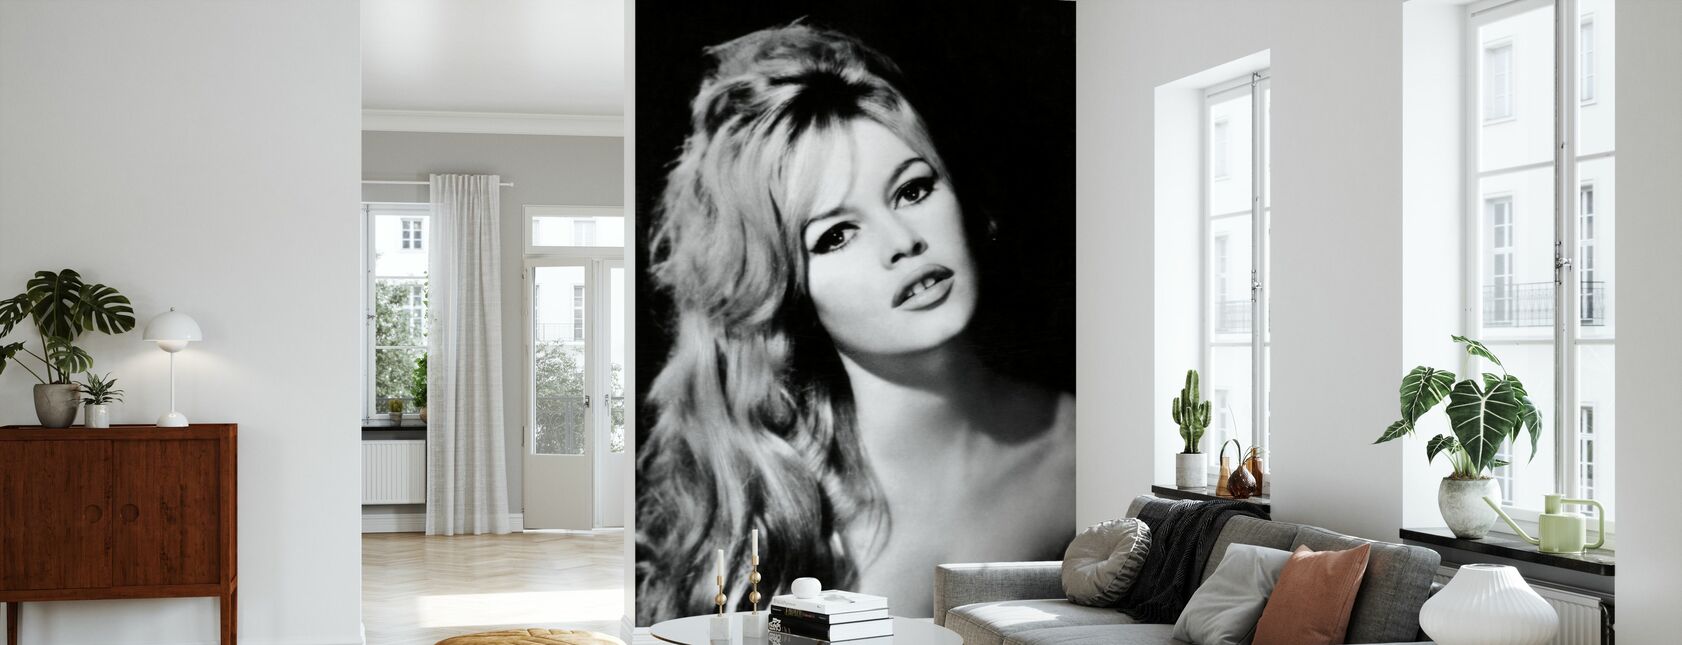 Brigitte Bardot in Contempt - Wallpaper - Living Room